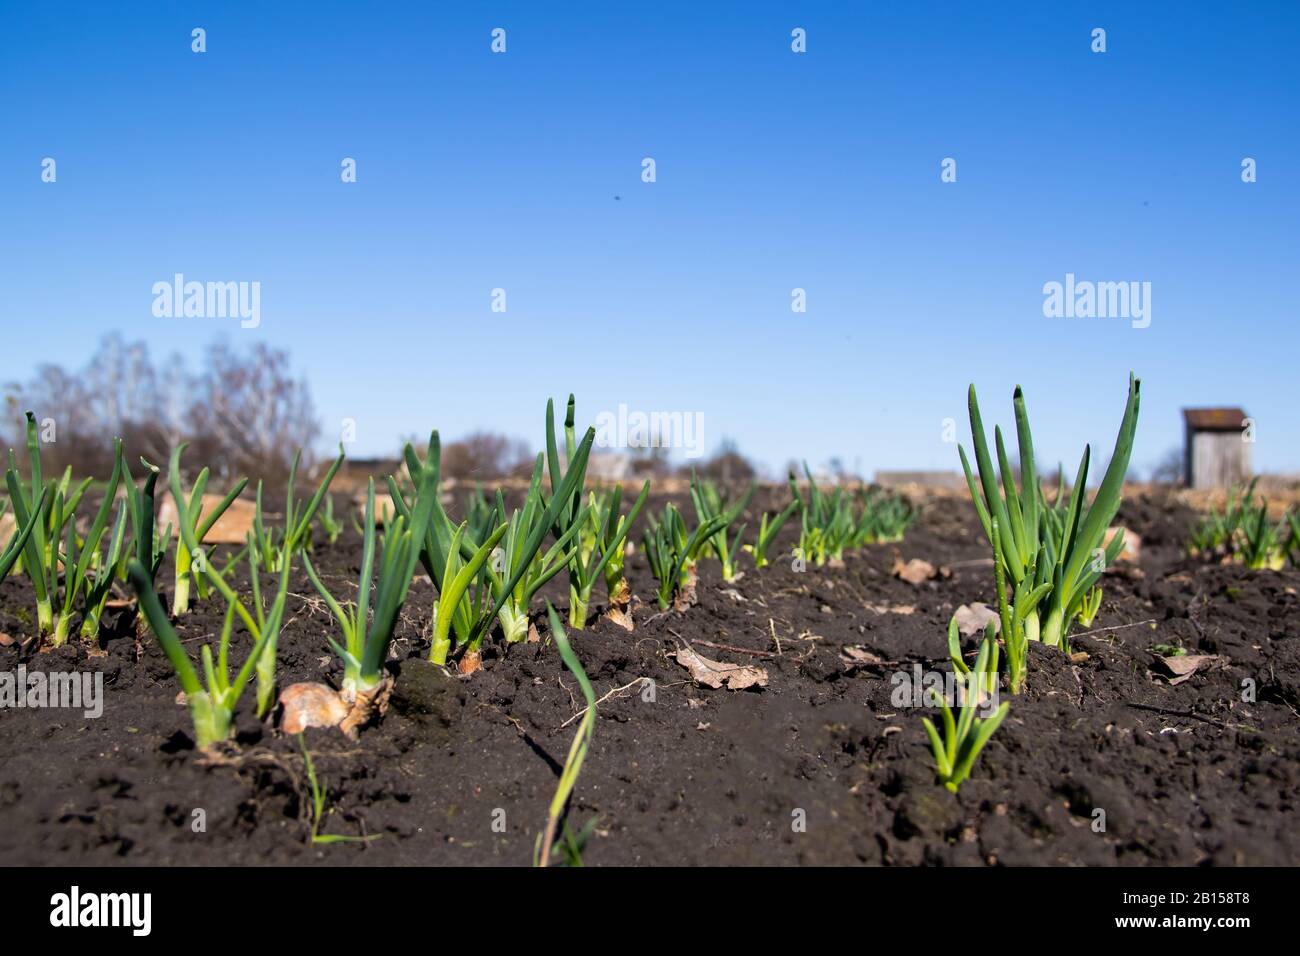 Giovane cipolla verde germogliata su un campo, cielo di primavera blu e un vecchio wc nell'agricoltura background.Organic. Foto Stock